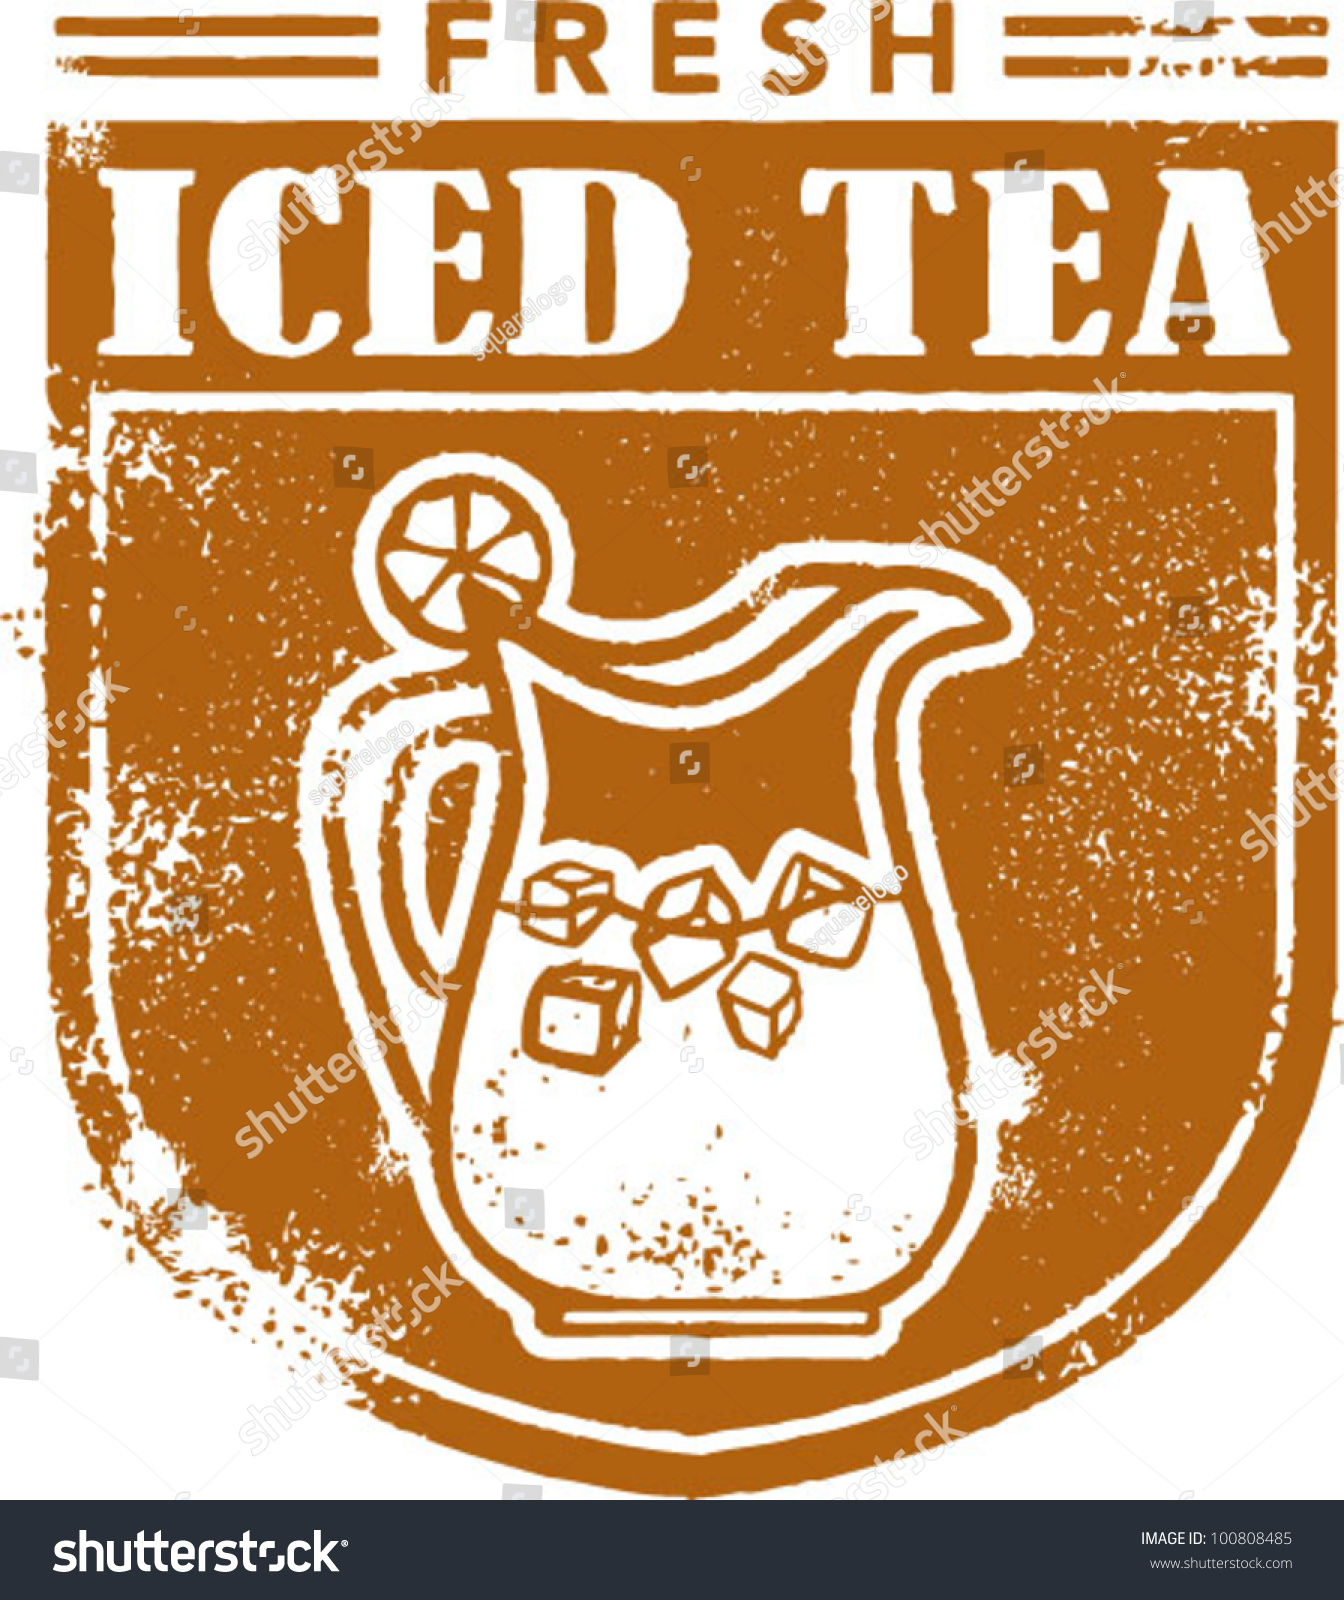 clipart ice tea - photo #45